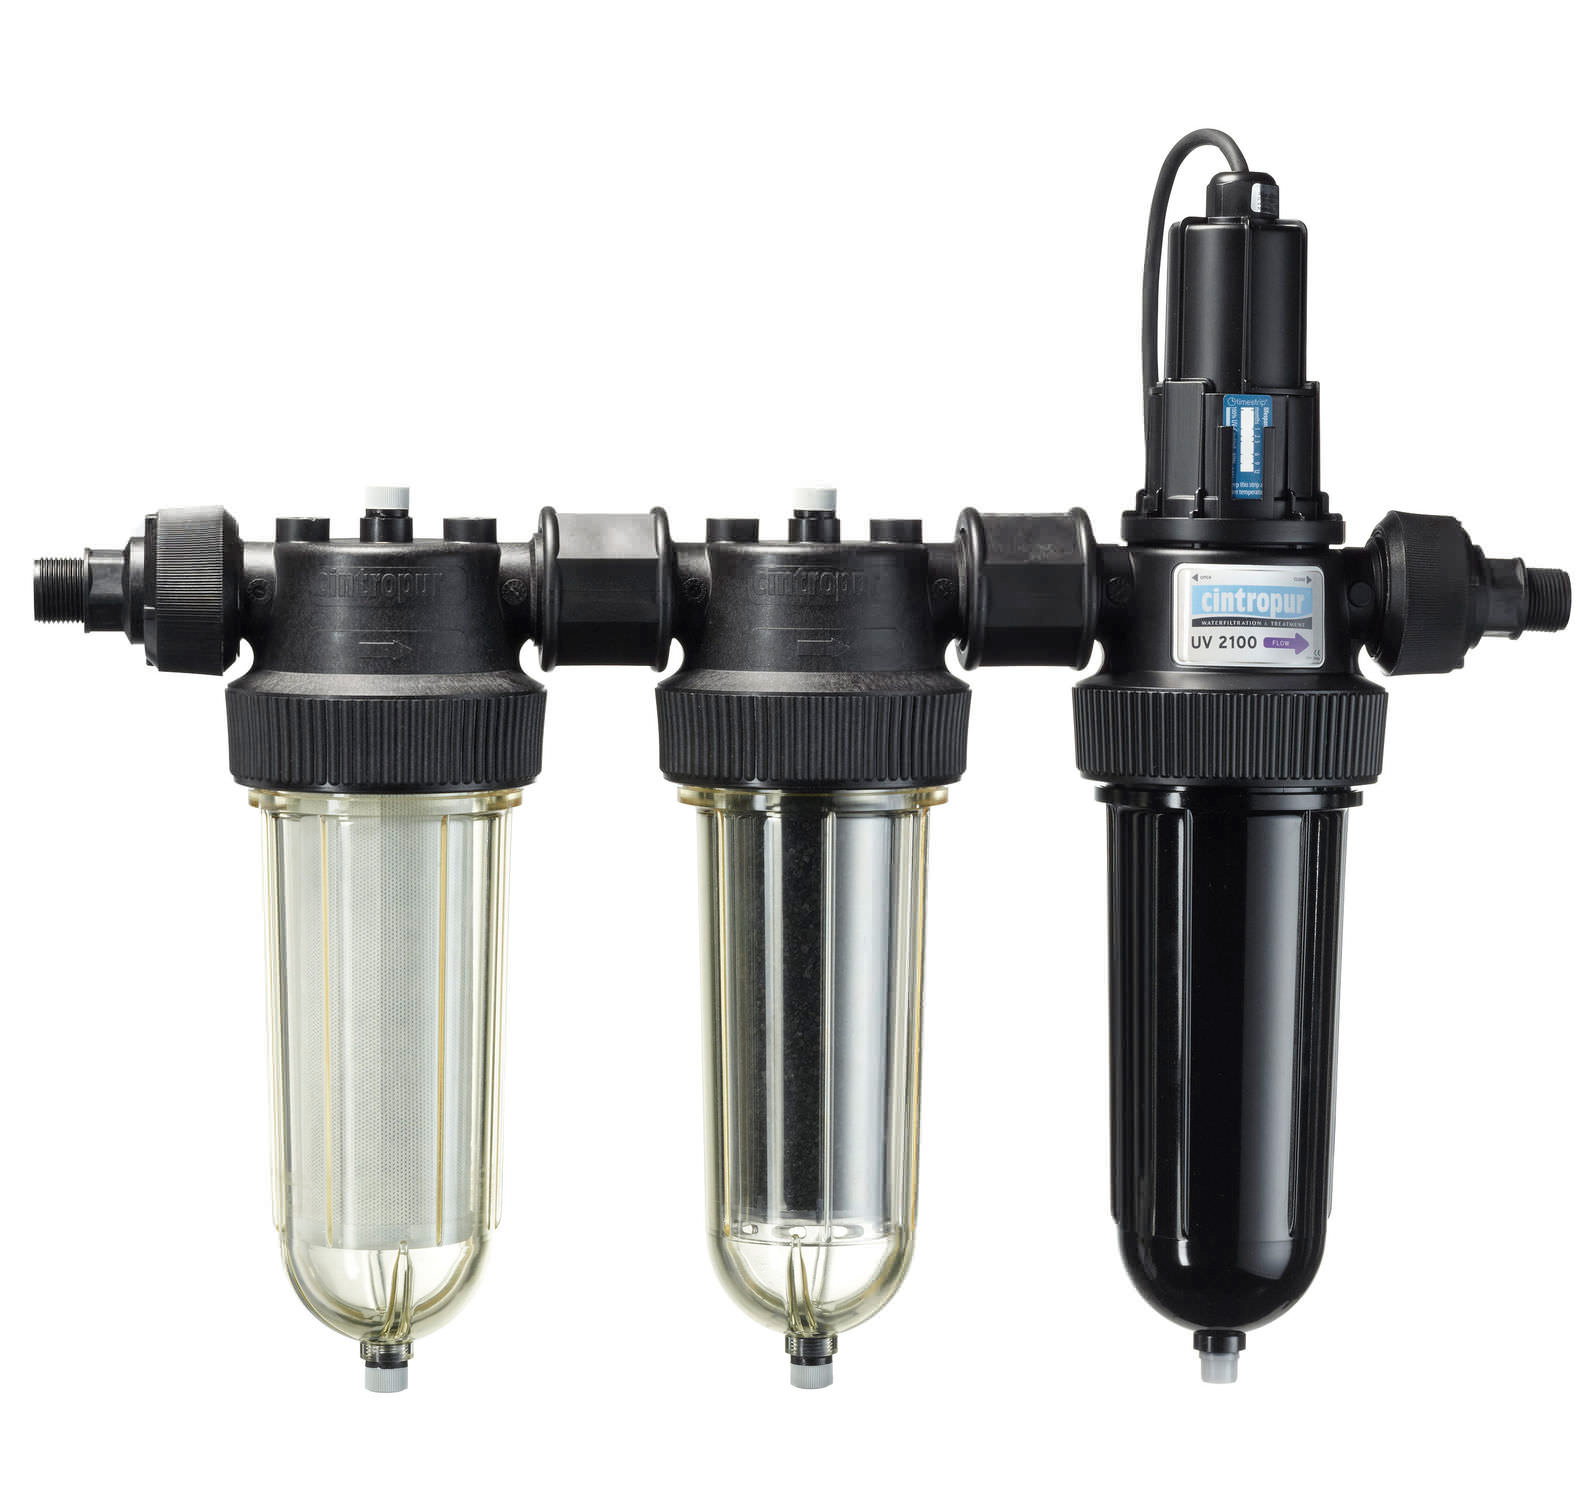 Filtration pluie : 3 filtres permettant d’ôter les imputés de l'eau de pluie